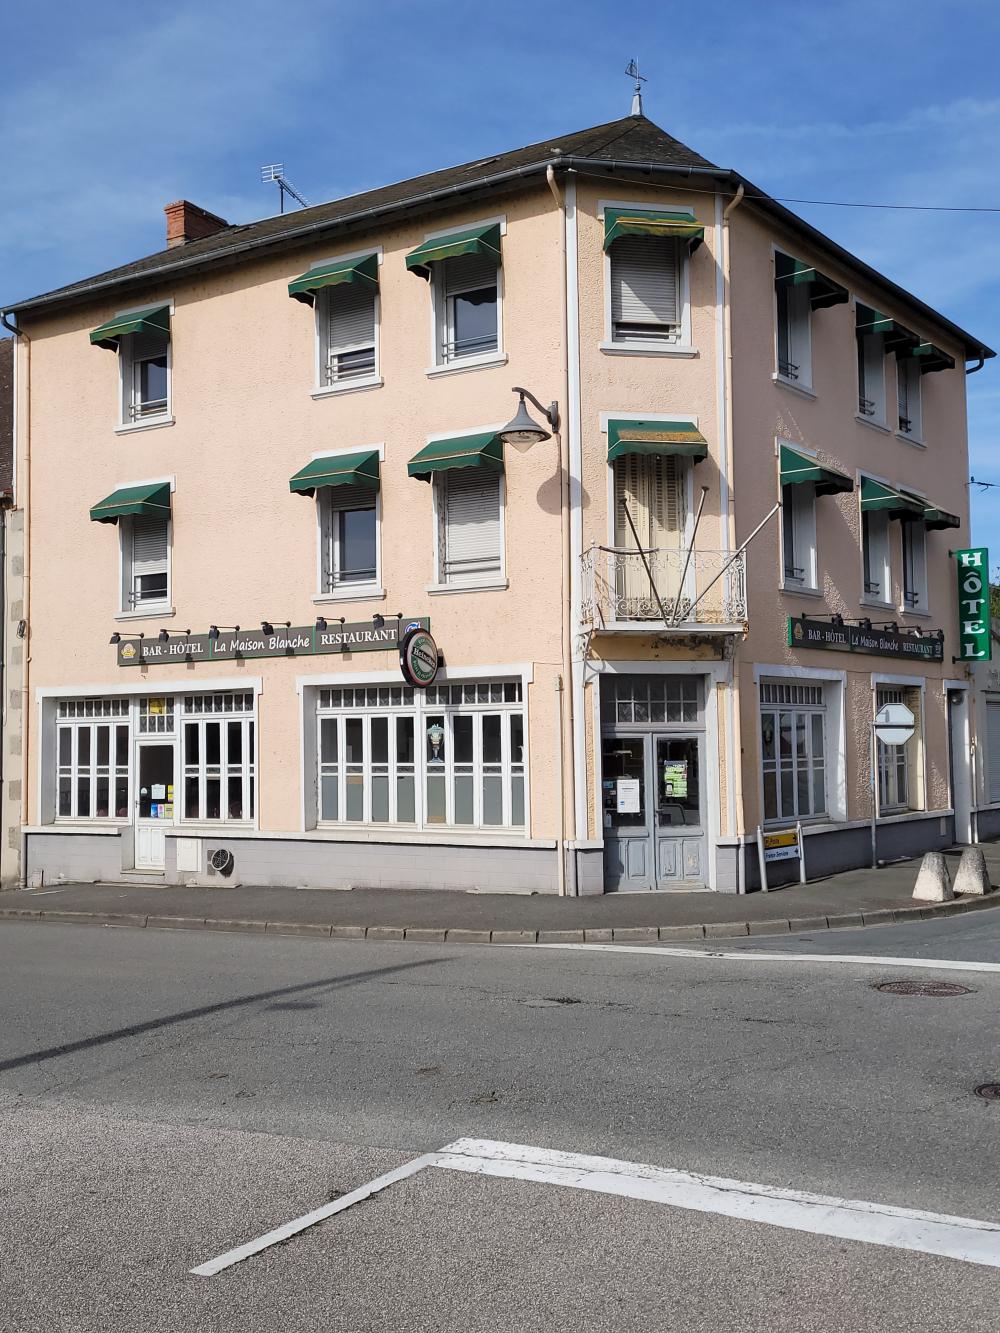 hôtel restaurant, Gouzon, Creuse